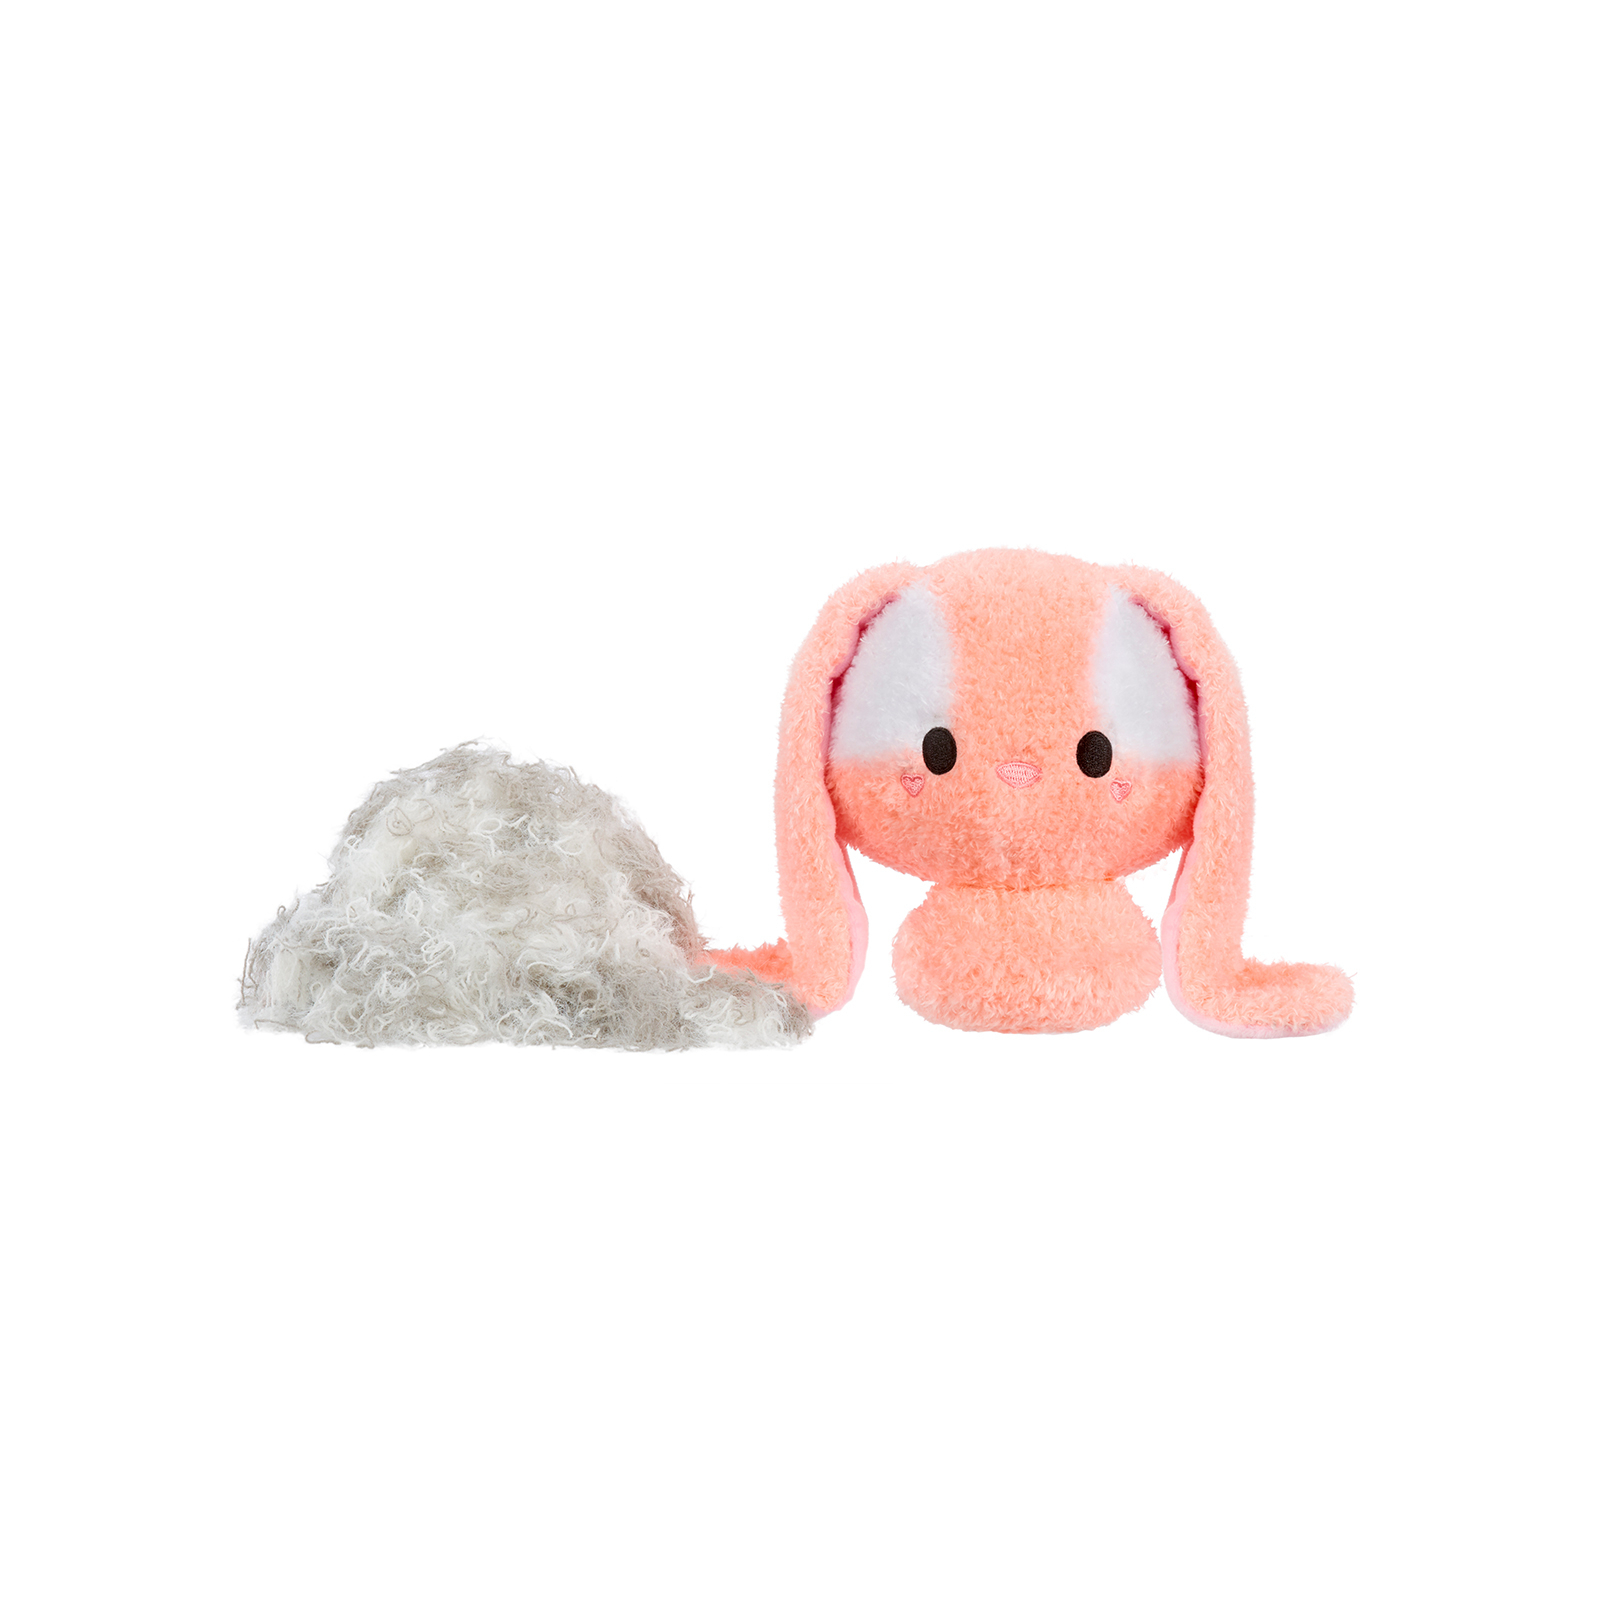 Развивающая игрушка Battat антистресс серии Small Plush-Зайка (594475-2) изображение 5